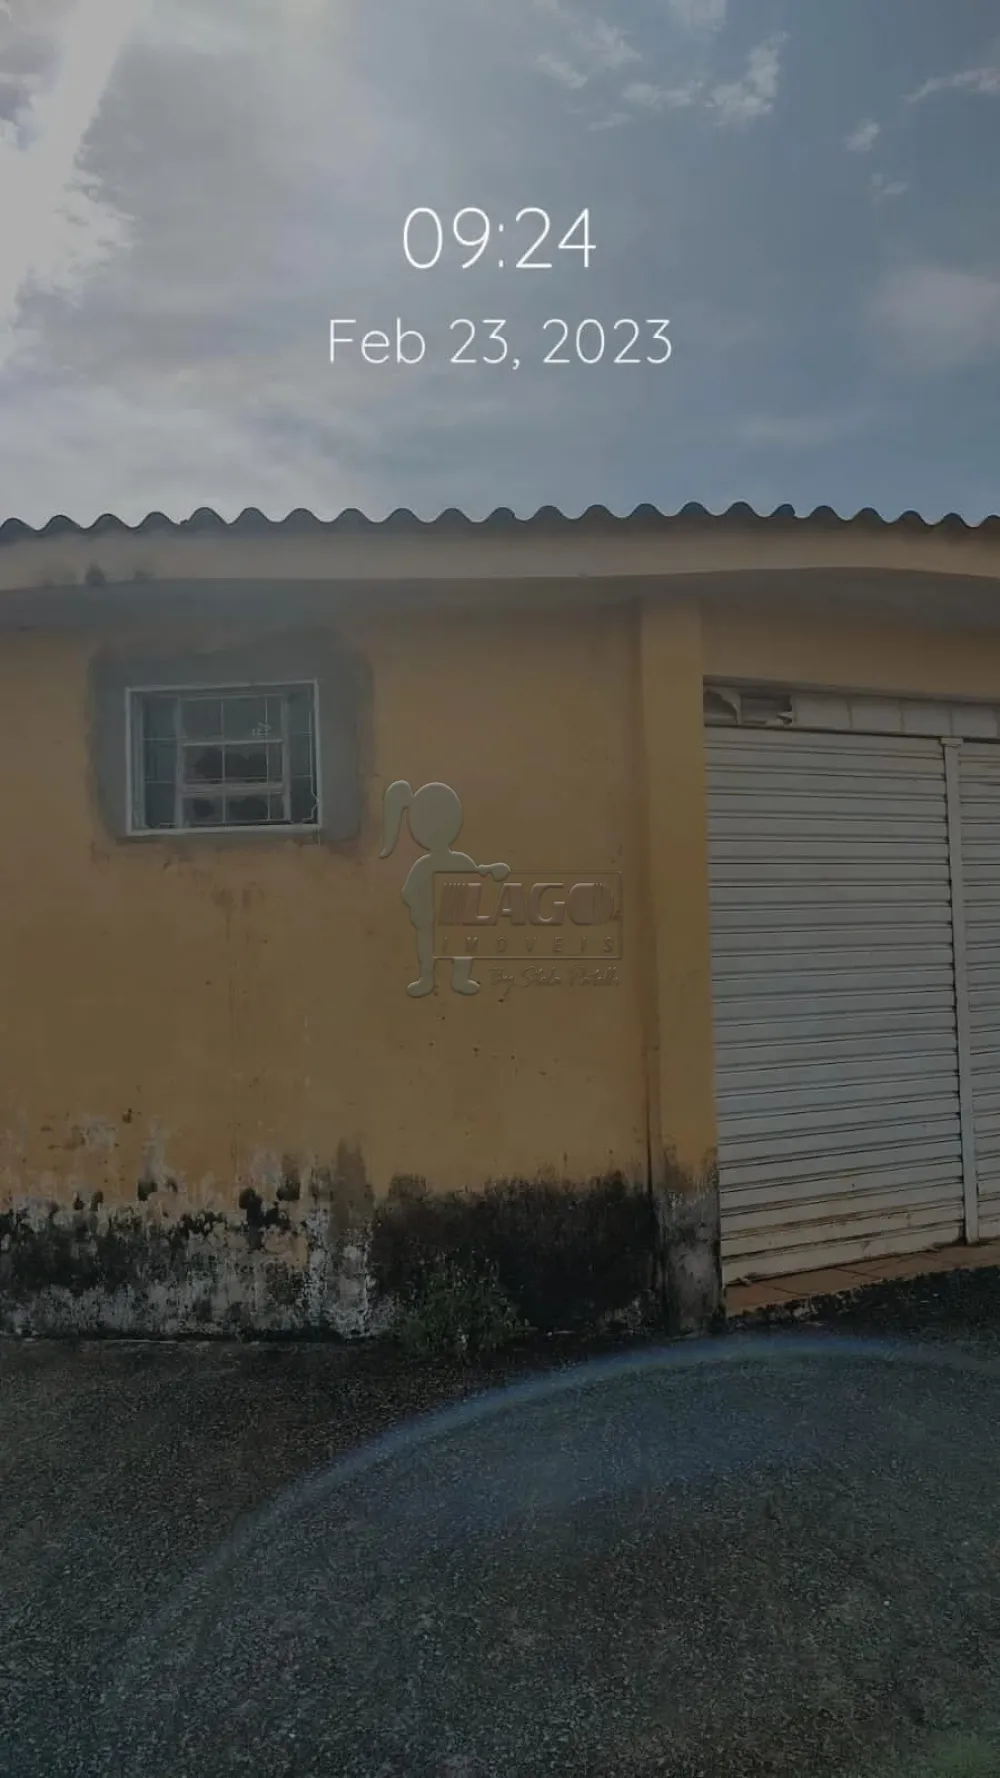 Comprar Casas / Padrão em Ribeirão Preto R$ 150.000,00 - Foto 1